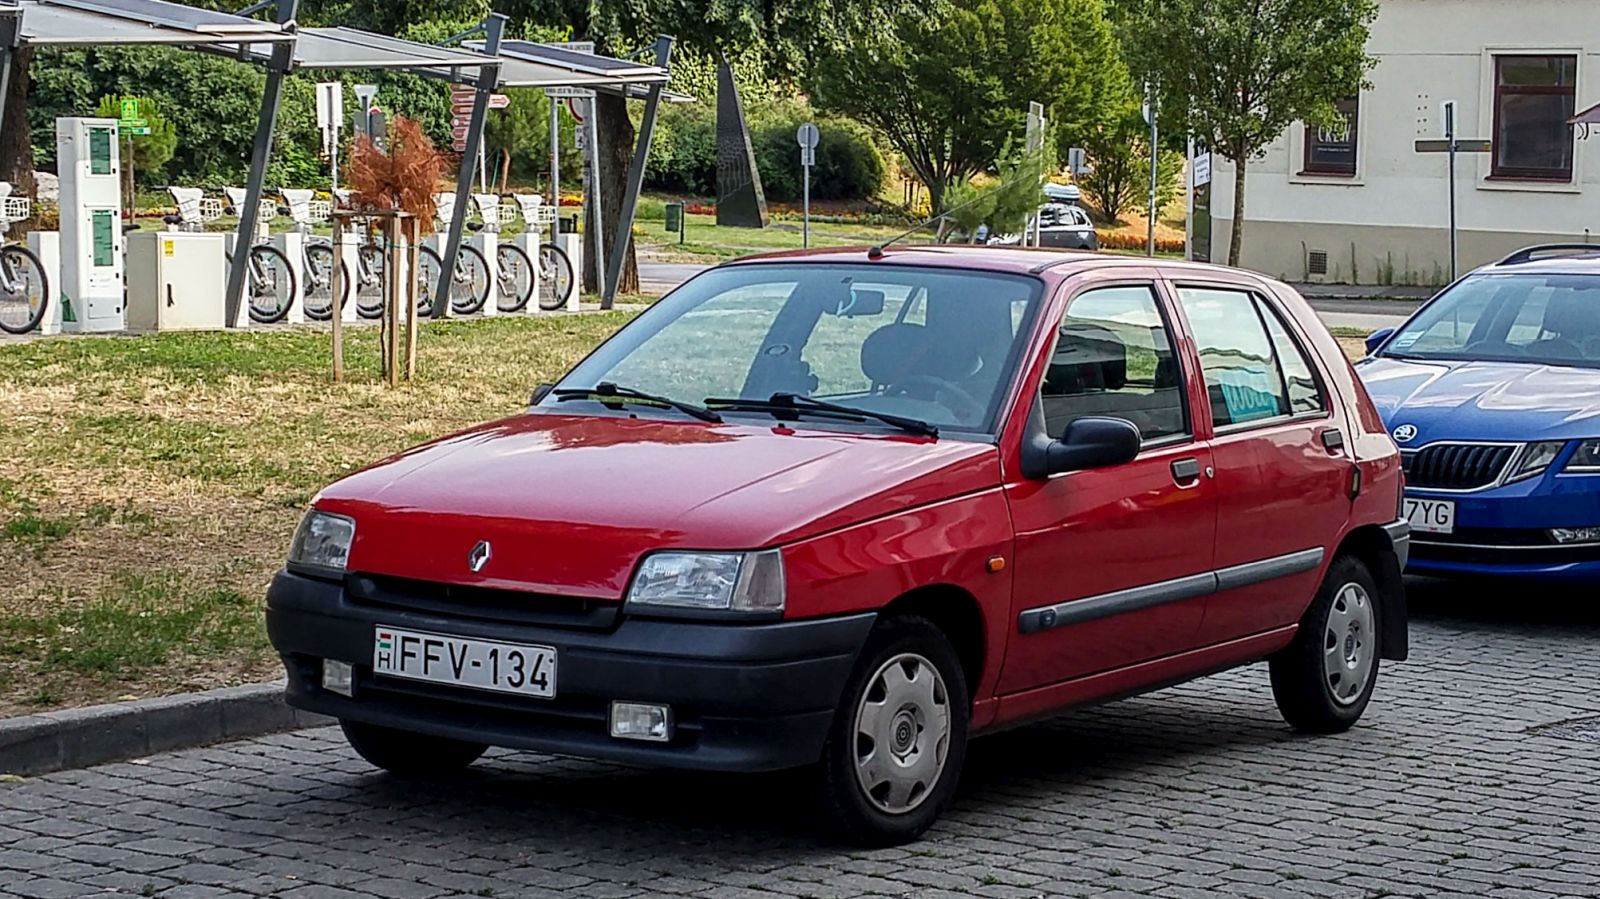 Diesen Renault Clio Mk1 habe ich in Juli, 2021 fotografiert.
